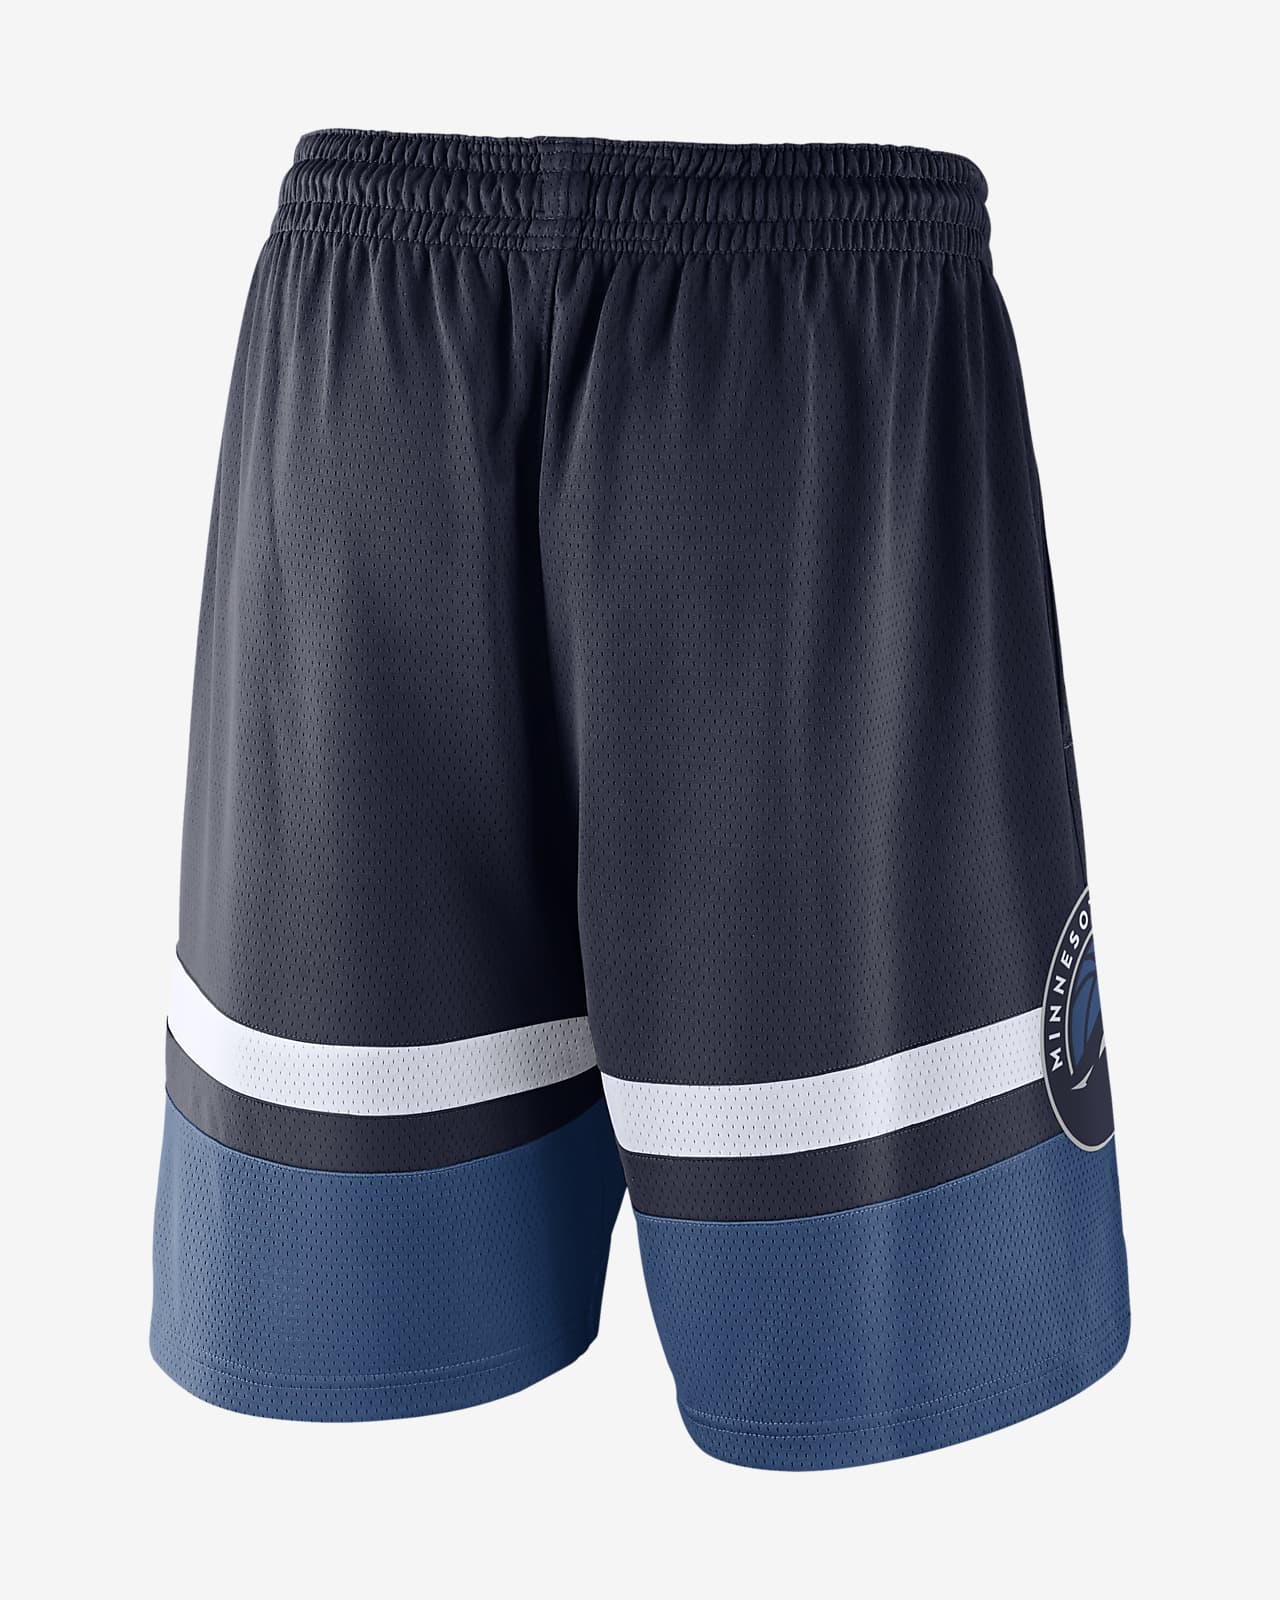 Mitchell & Ness shorts Minnesota Timberwolves royal Swingman Shorts